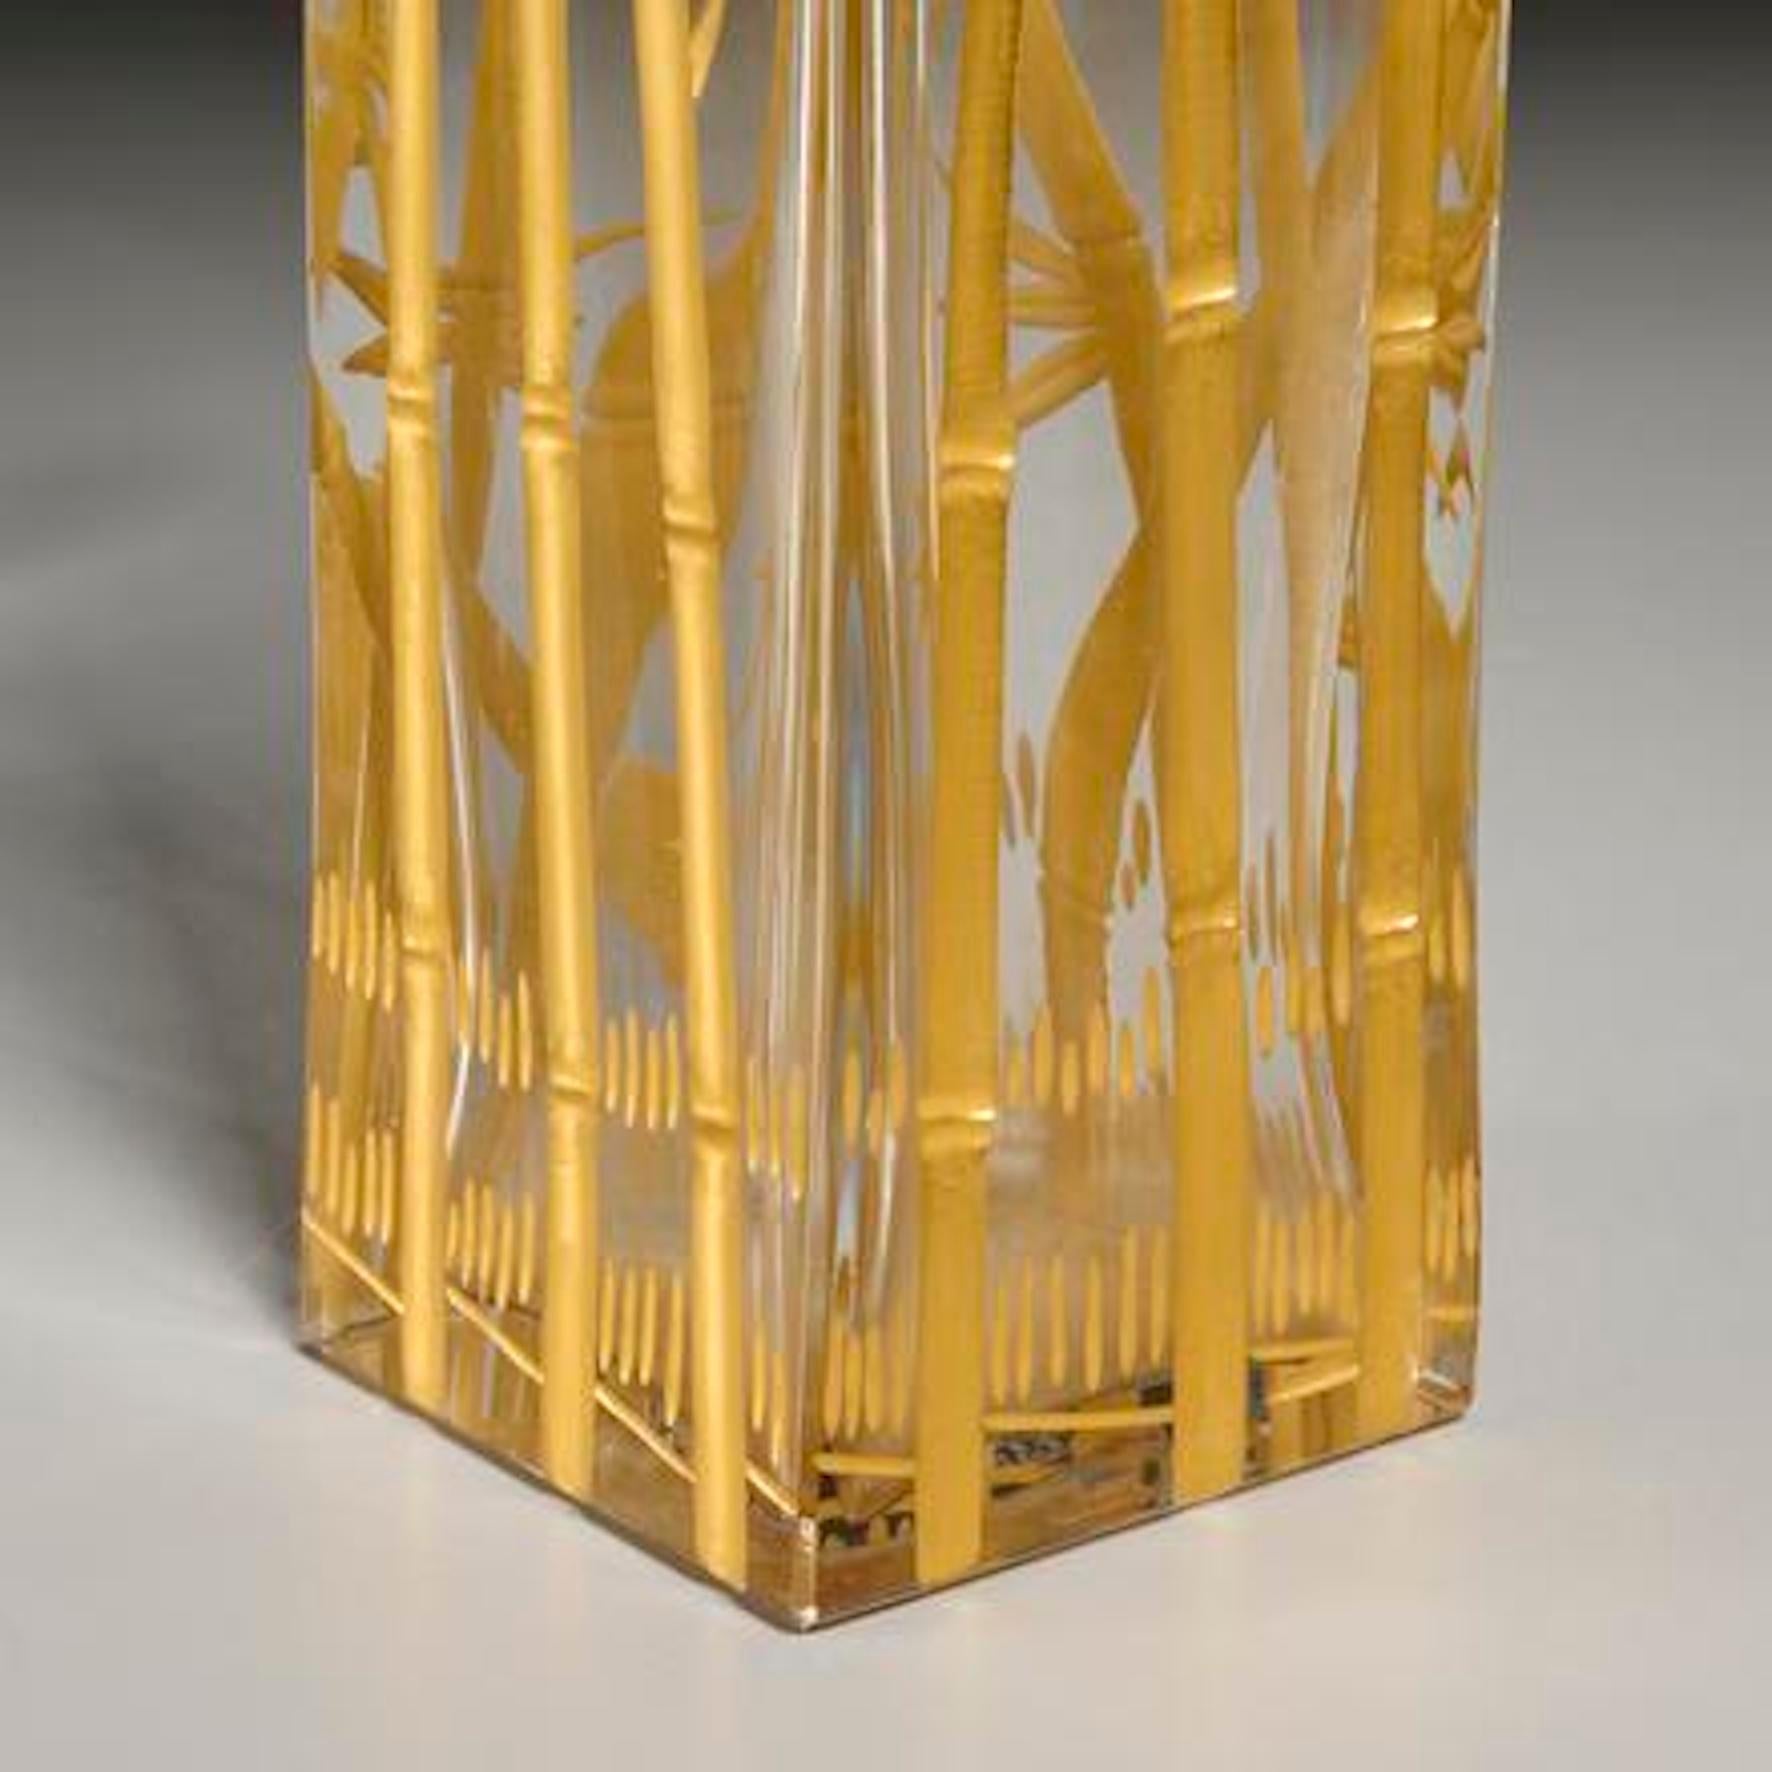 Vase aux bambous